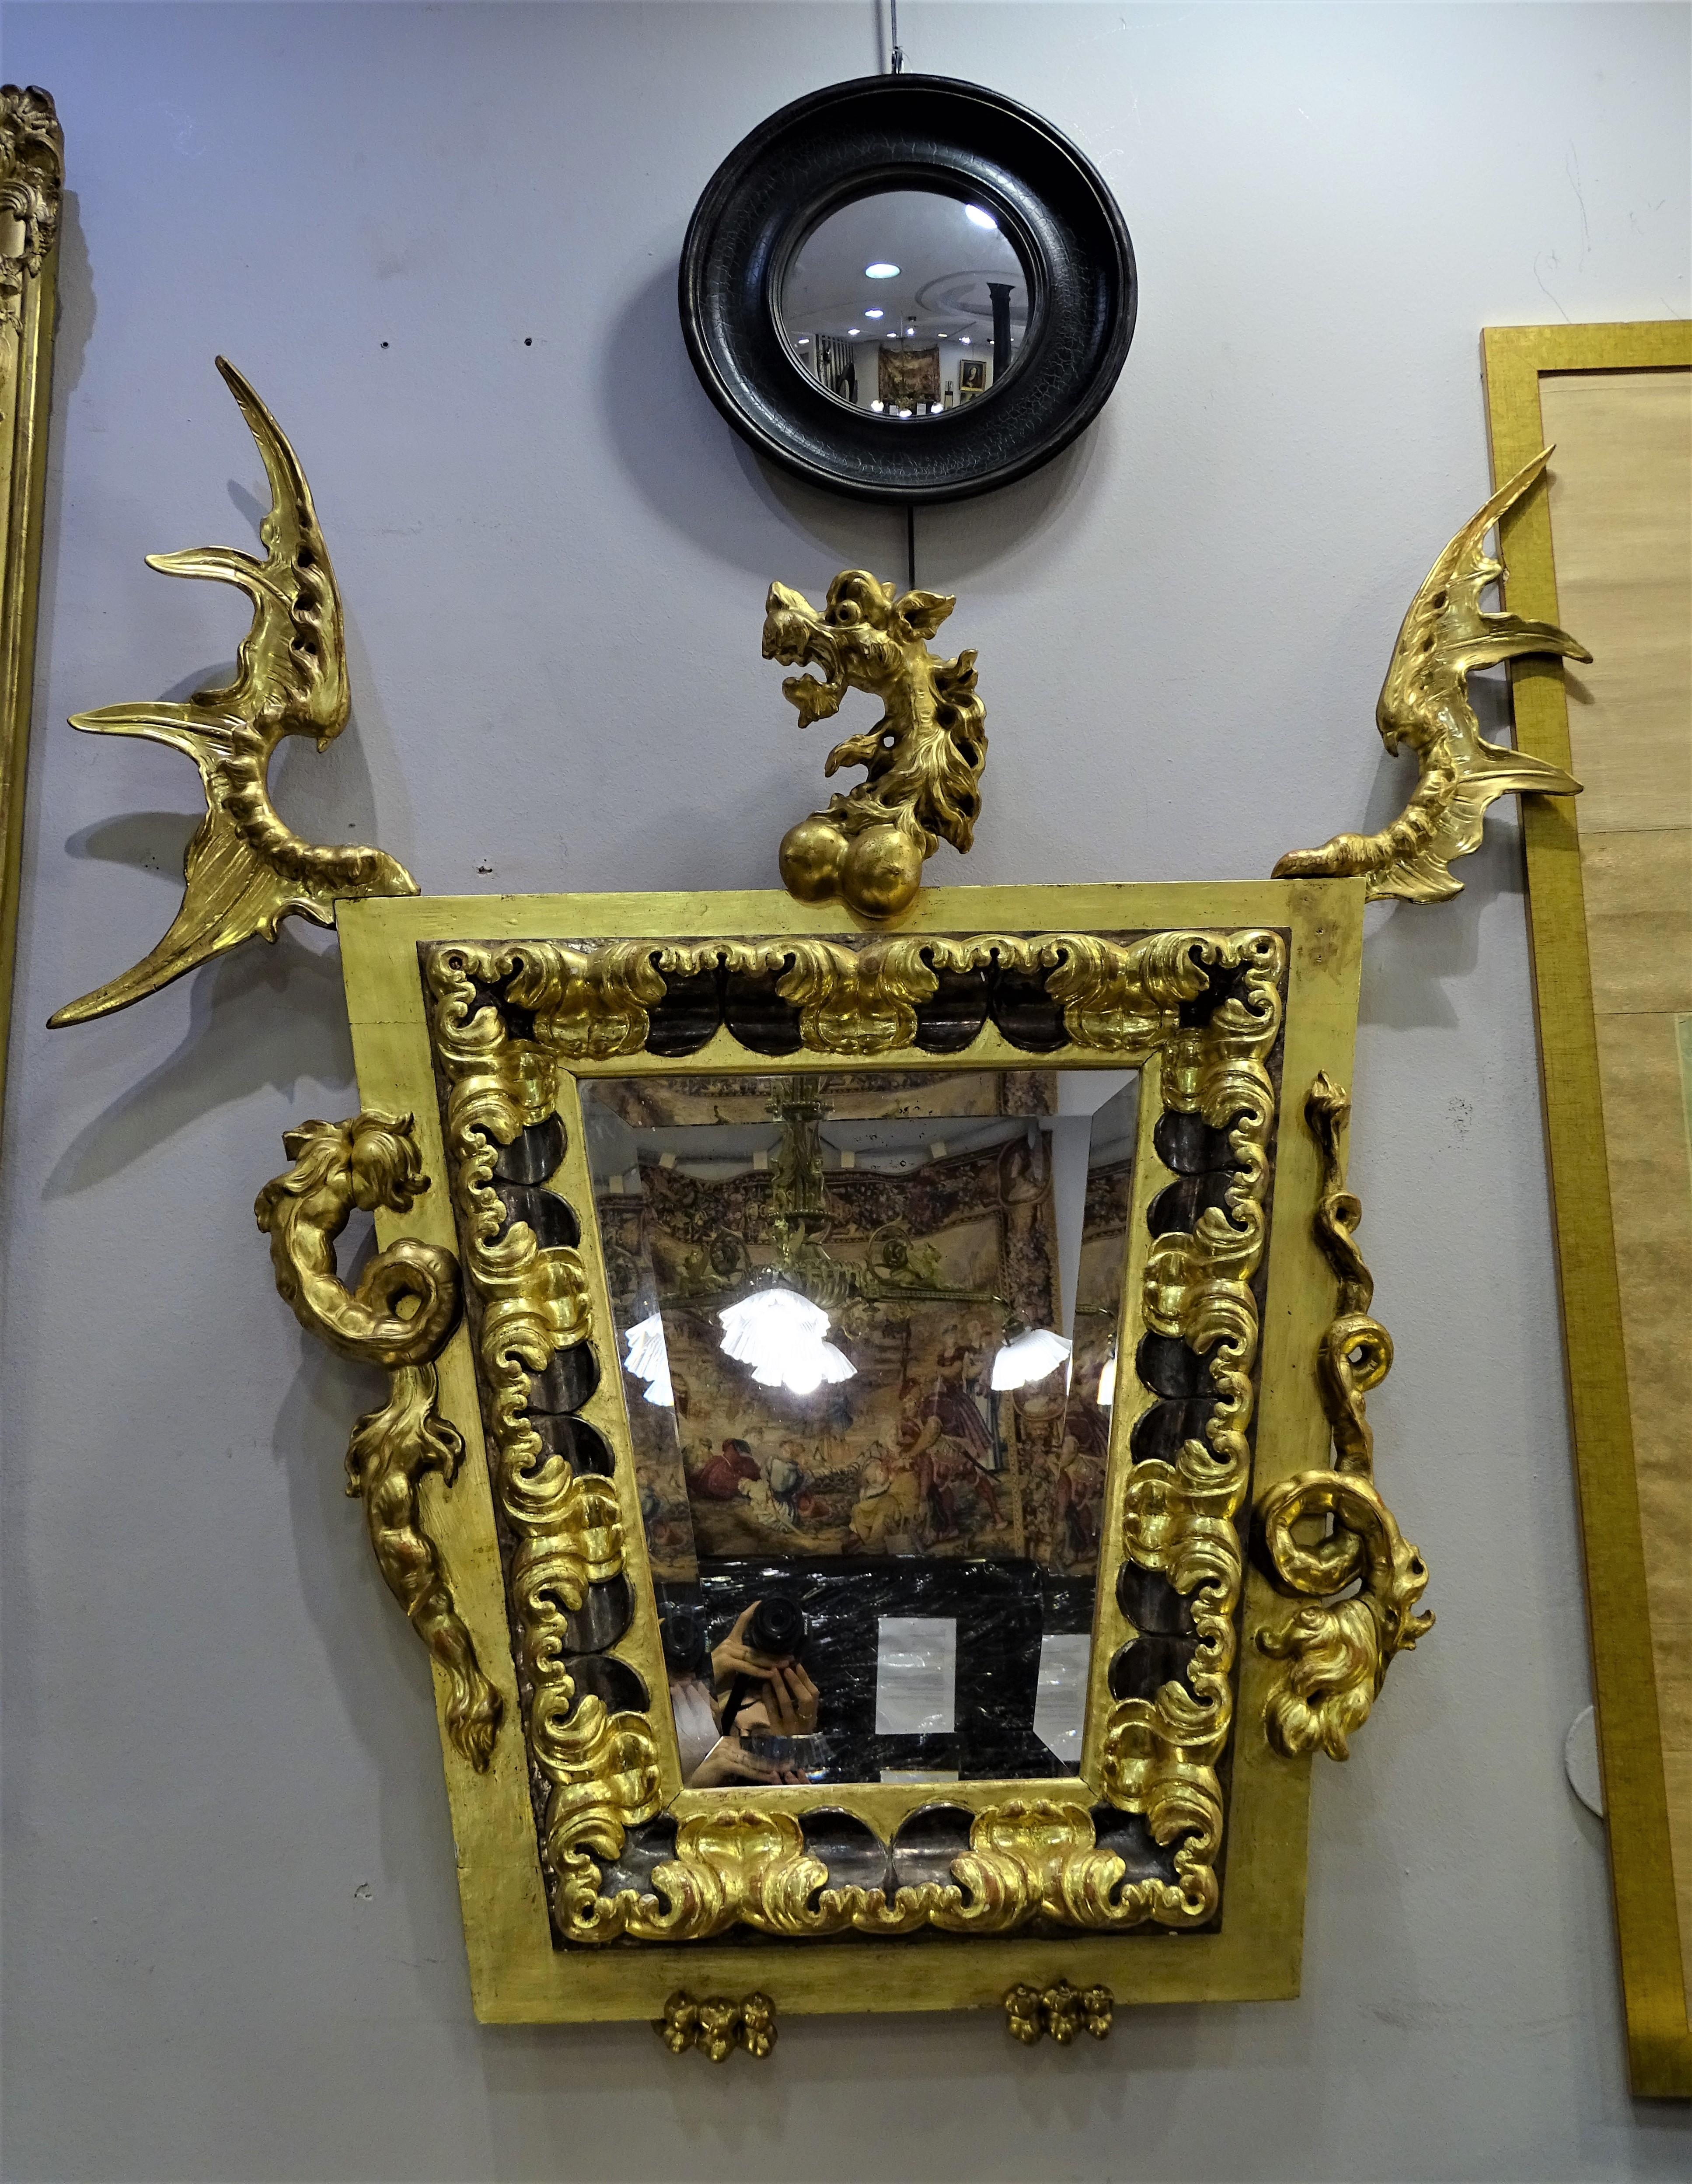 Remarquable miroir en forme de dragon anthropomorphe qui reprend les lignes de l'esthétique incontournable du designer Gabriel Viardot (1830-1906). Il s'agit d'une pièce au caractère unique et original. Totalement unique. De style japonais, le